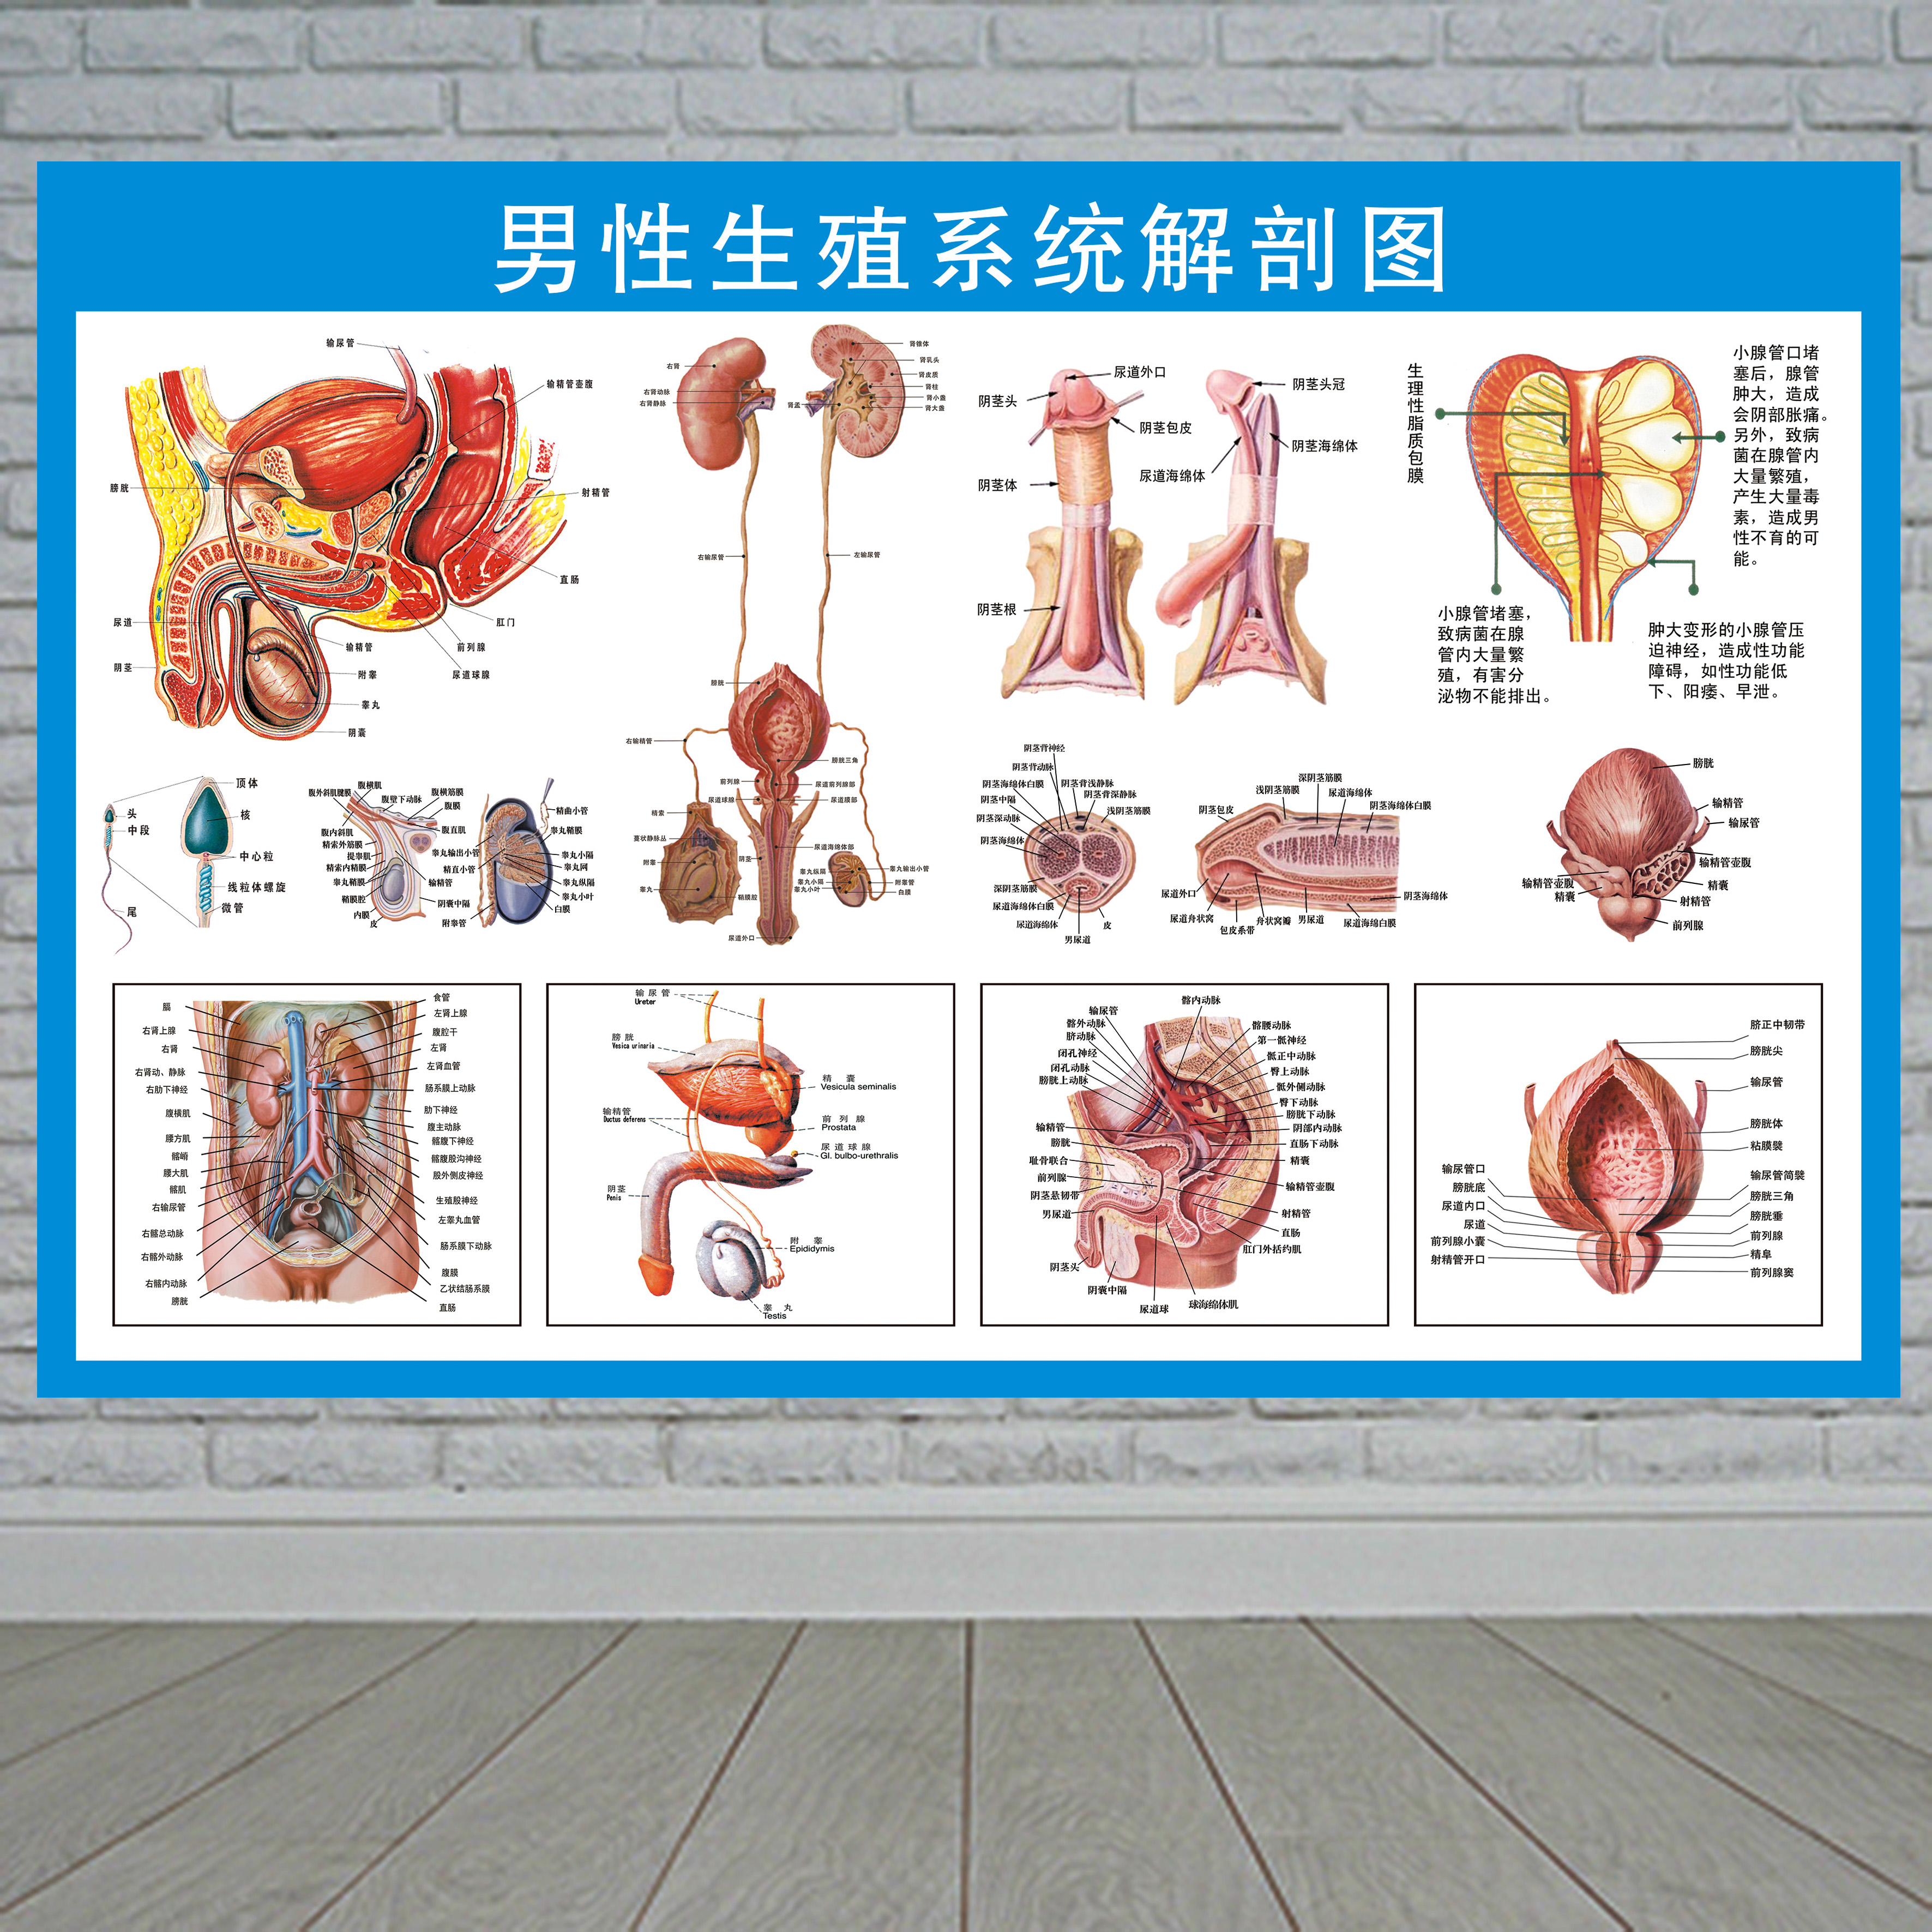 男性泌尿生殖系统解剖图保健知识挂图医院人体医学解剖宣传画海报